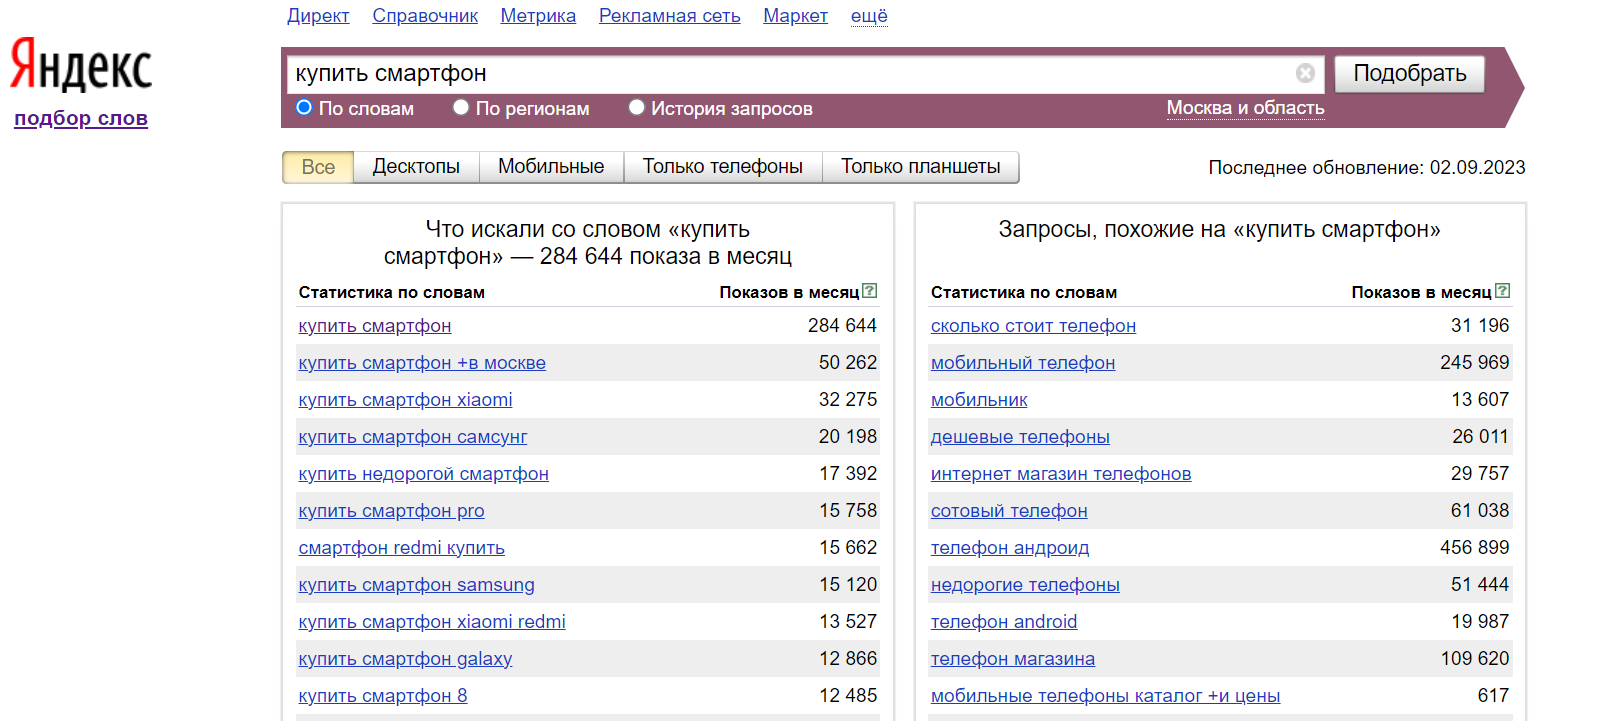 Проверка сайта по ключевым словам. Подбор ключевых слов. Подобрать ключевые слова для сайта. Запросы в Яндексе по словам.